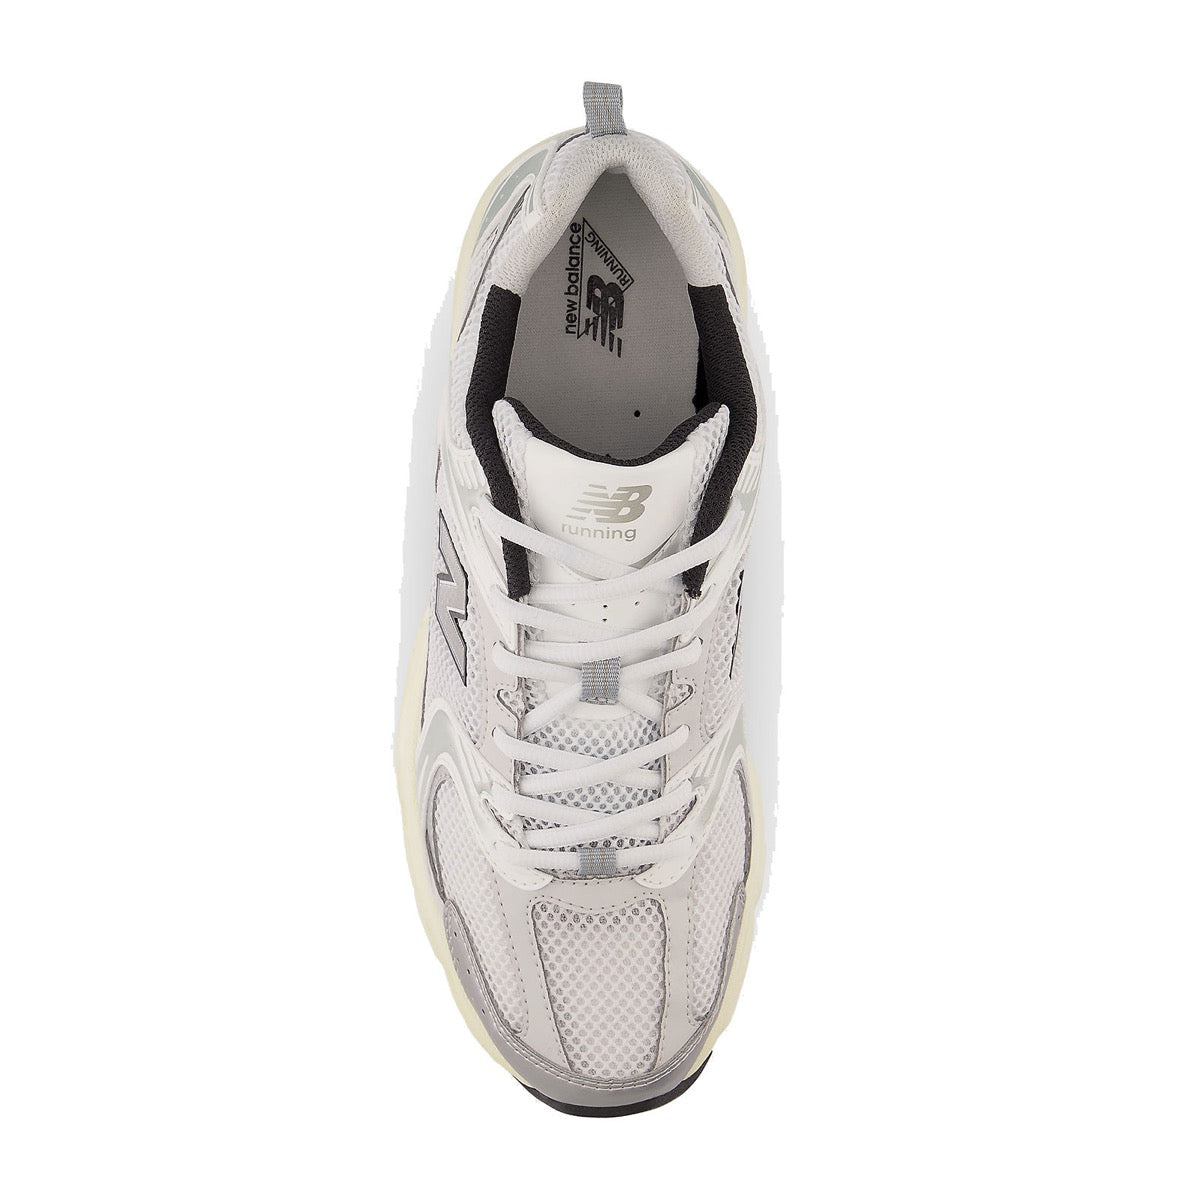 Scarpe Running NEW BALANCE Sneakers 530 in Tessuto Sintetico e Mesh colore White Silver Metallic e Black